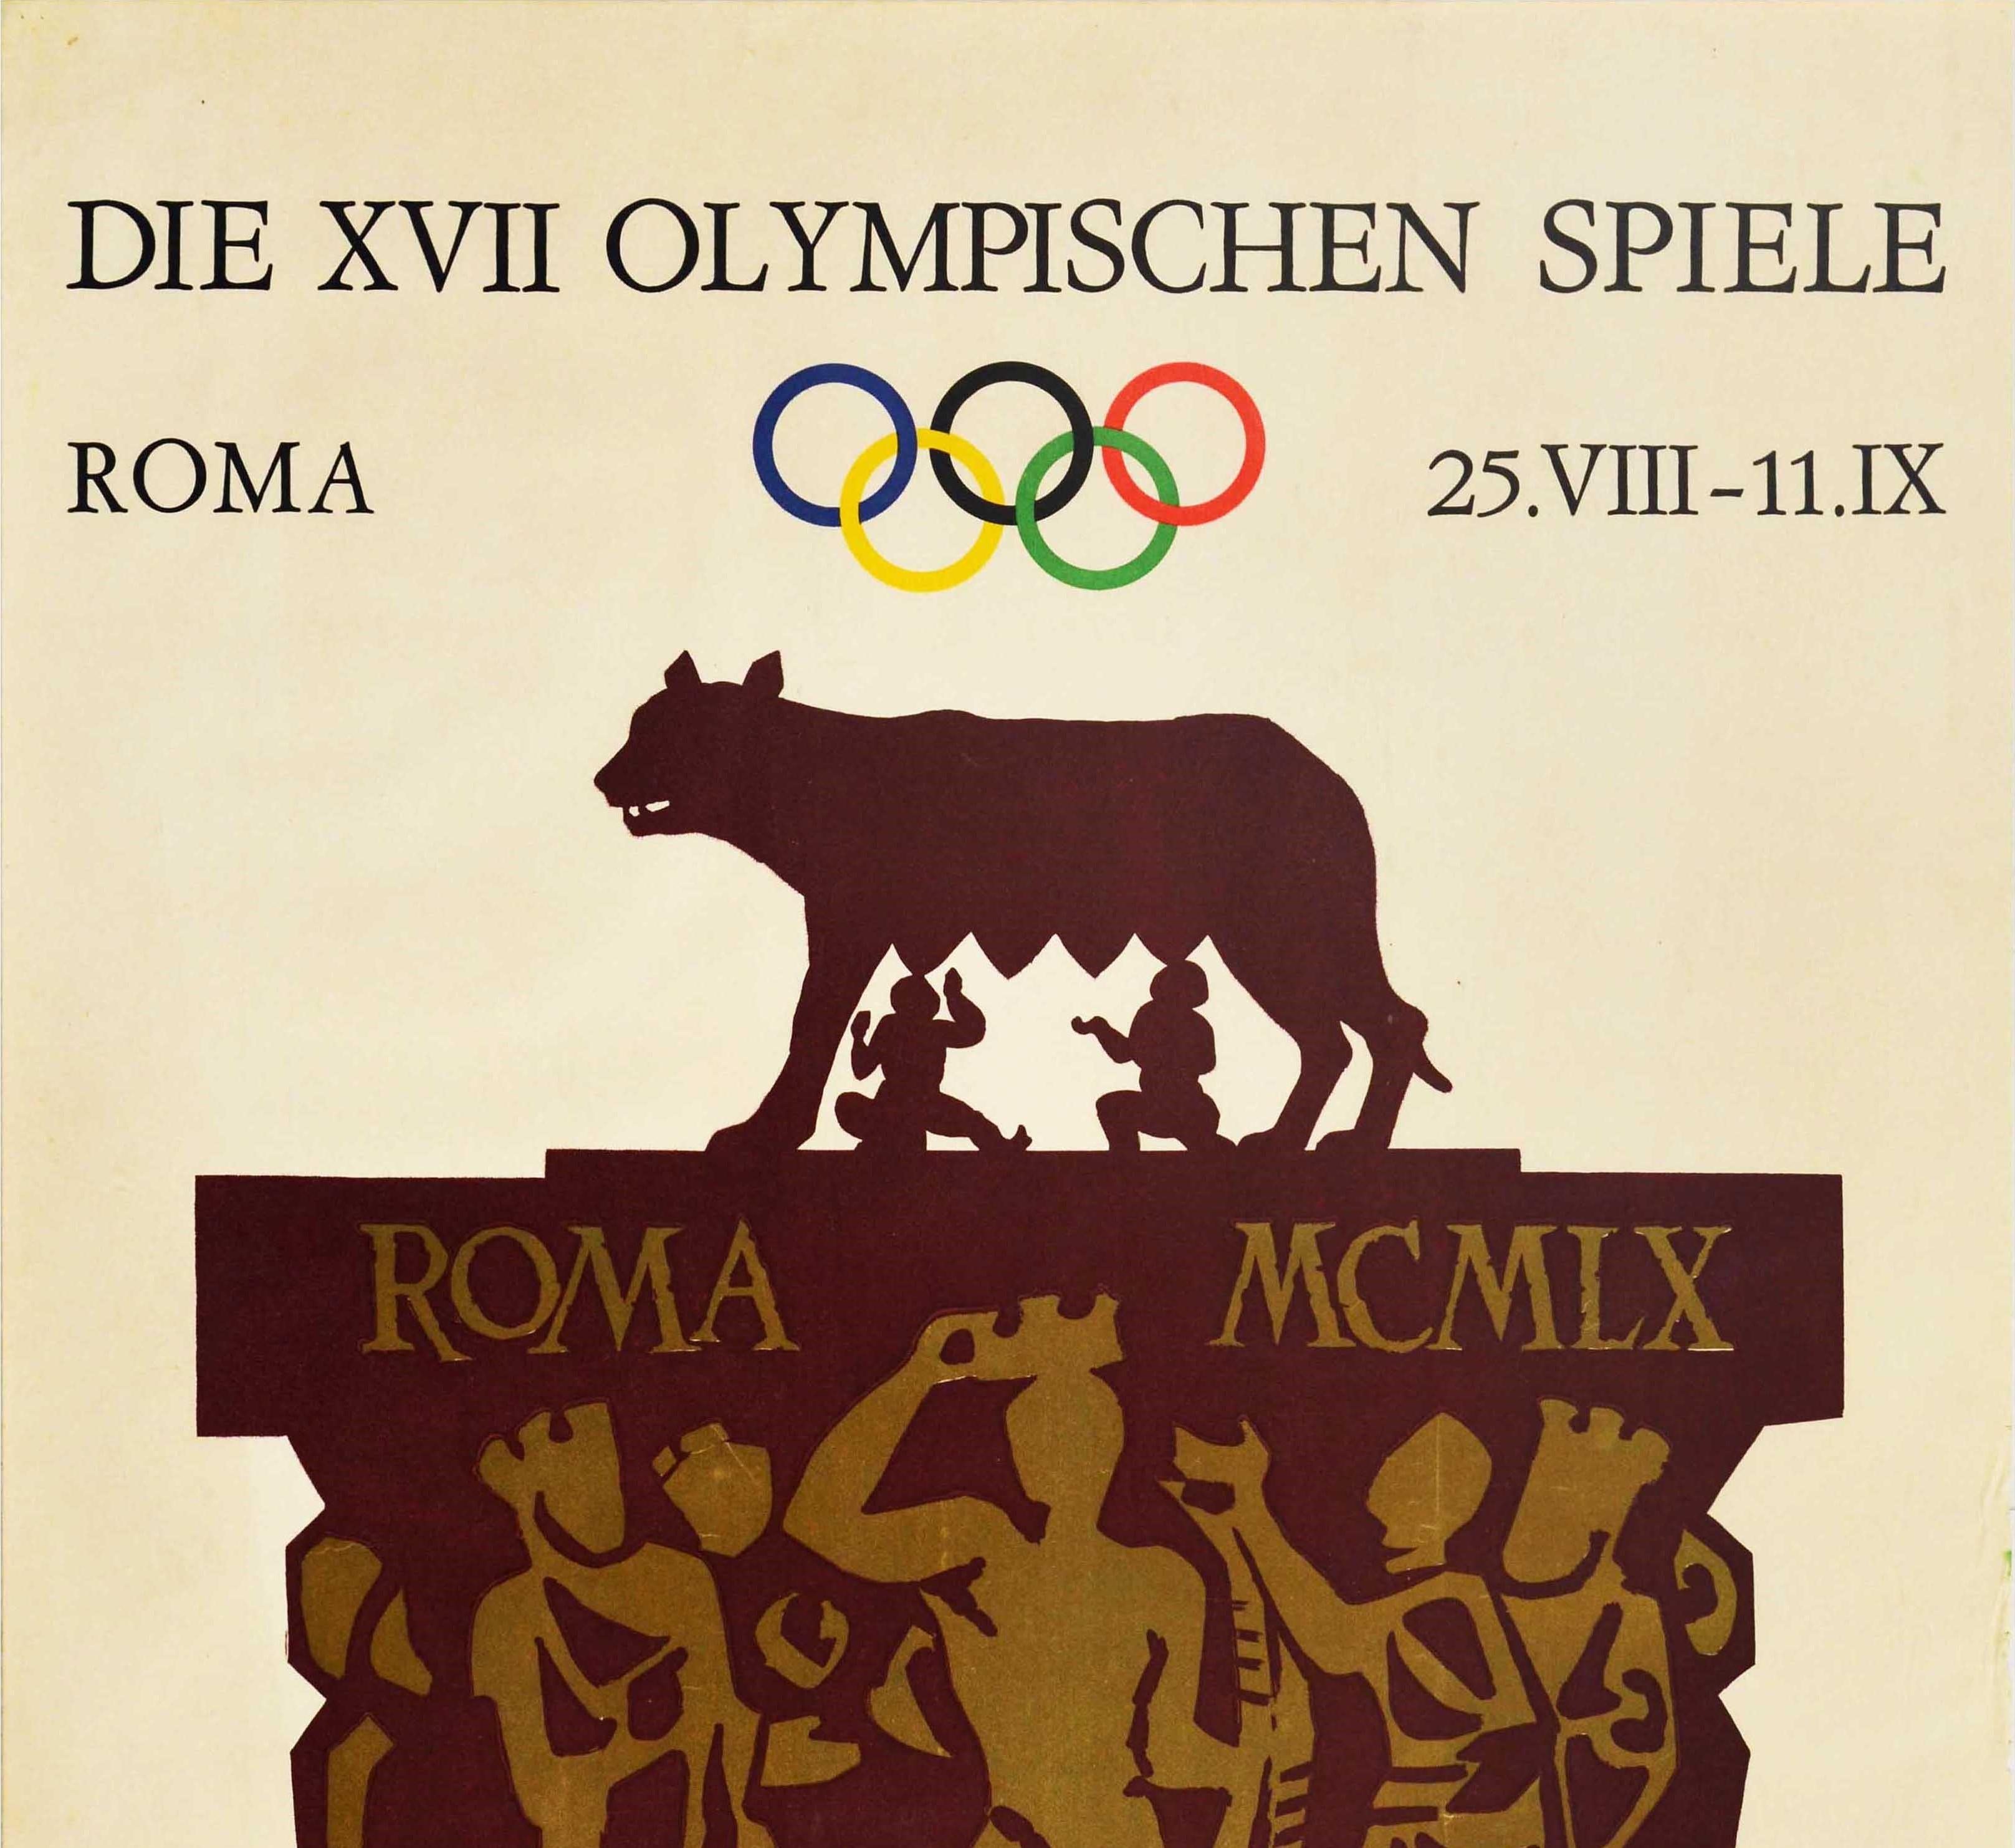 Original Vintage Sportplakat für Die XVII Olympischen Spiele Roma 25.VIII-11.IX mit einem großartigen Design von Armando Testa (1917-1992), das die Zwillingsbrüder Romulus und Remus zeigt, die vom Kapitolinischen Wolf gesäugt werden (die antike